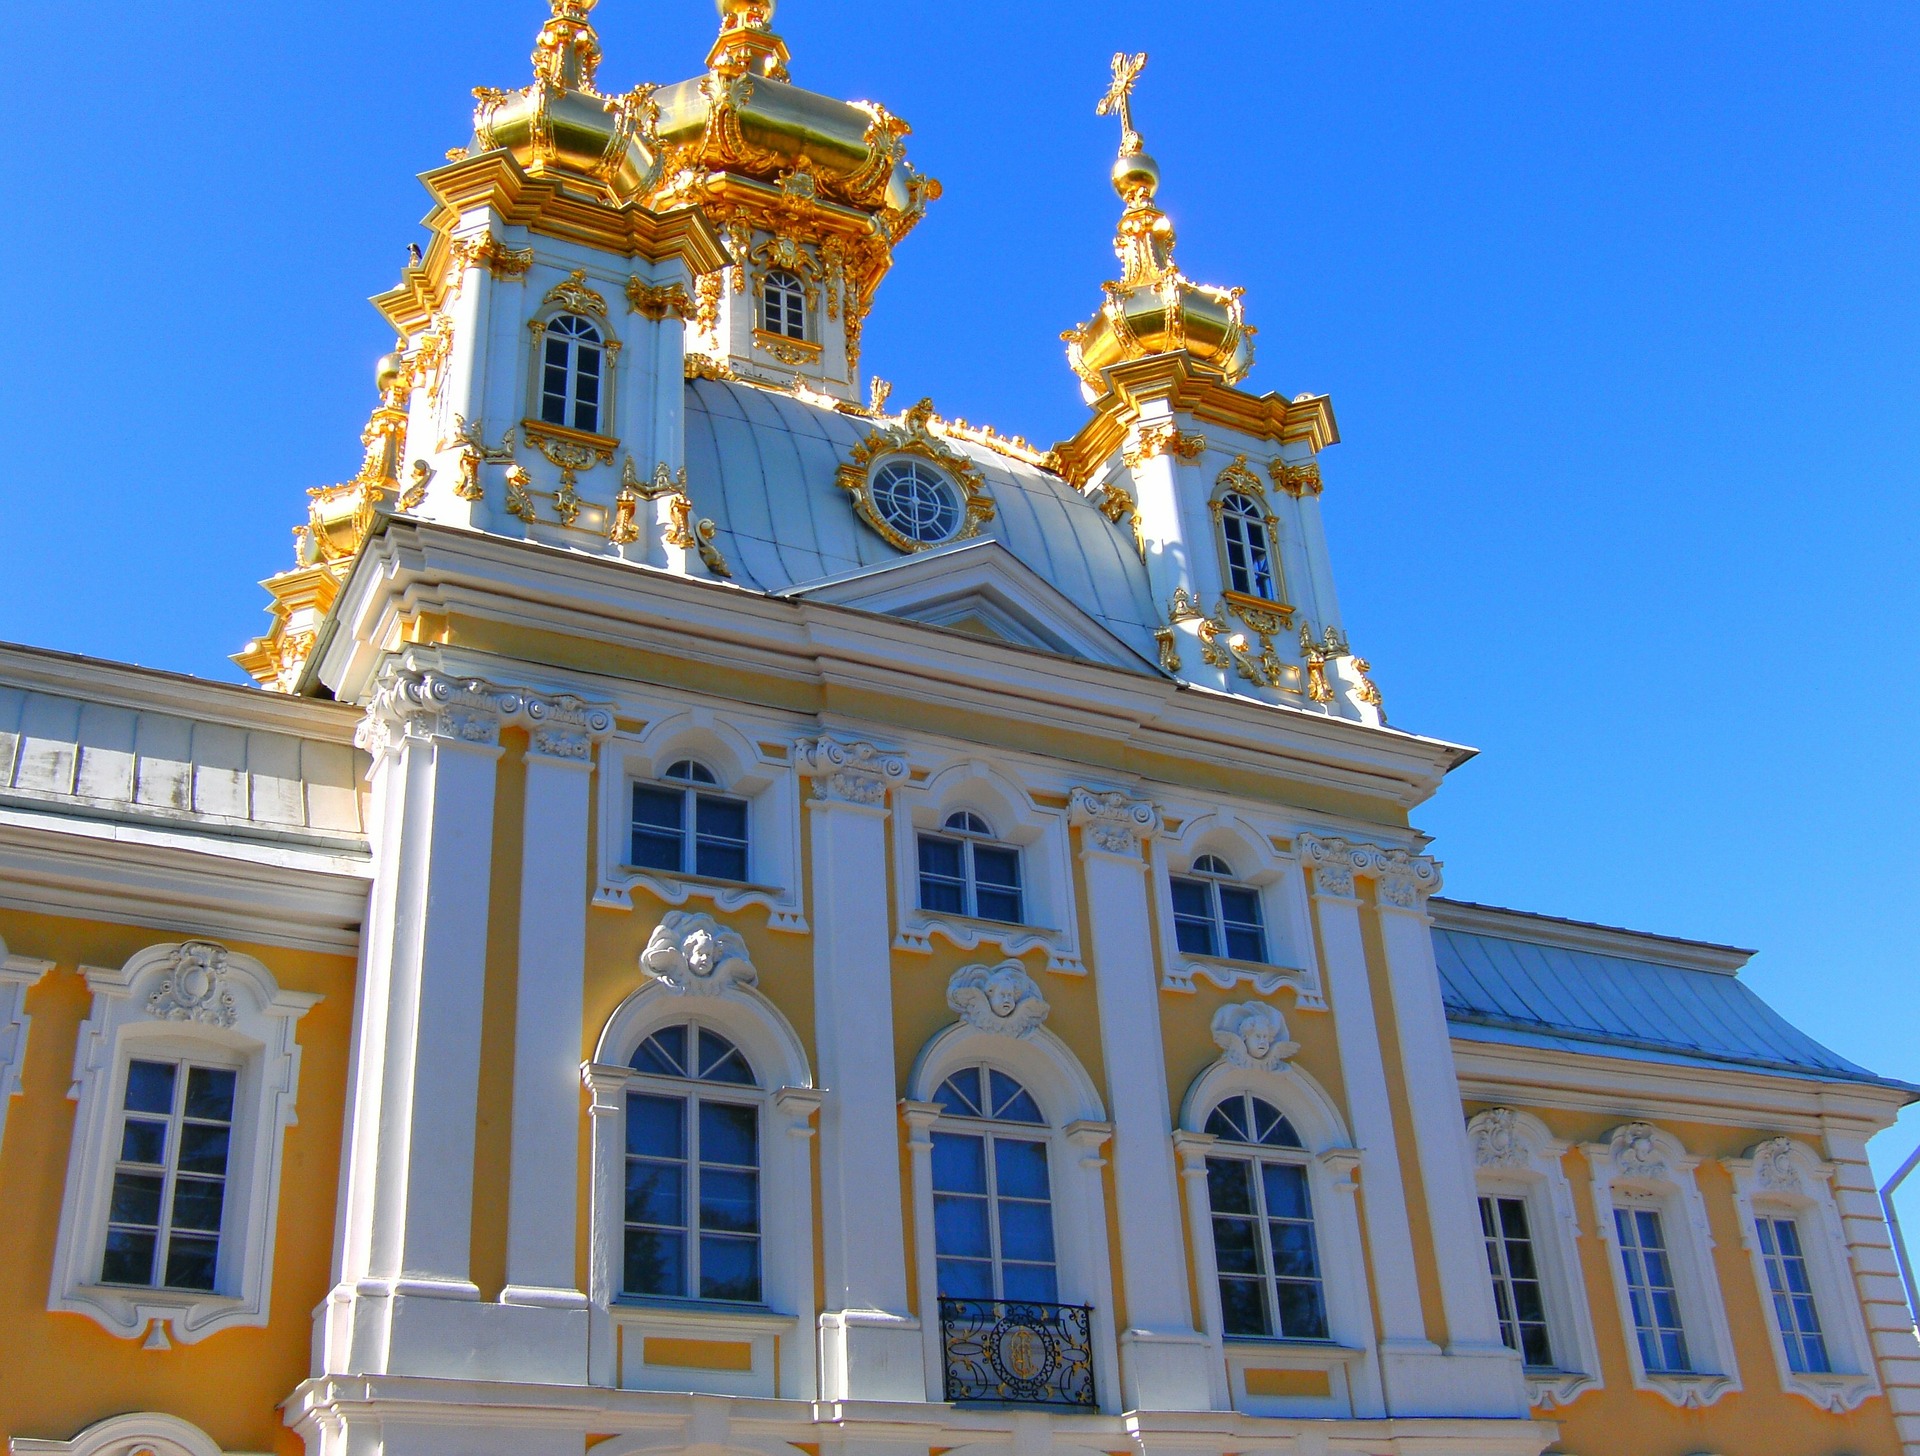 A világ 8 legkülönlegesebb palotája: Peterhof Palota – Szentpétervár, Oroszország